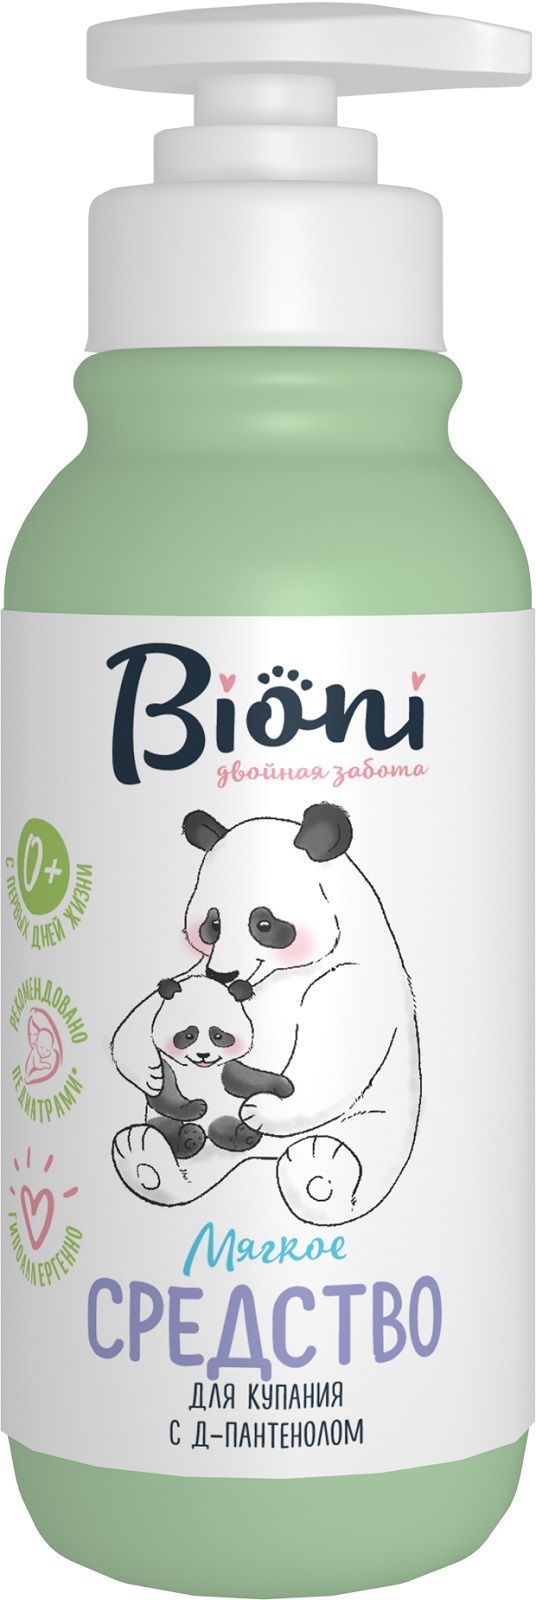 фото упаковки Bioni Средство для купания младенцев